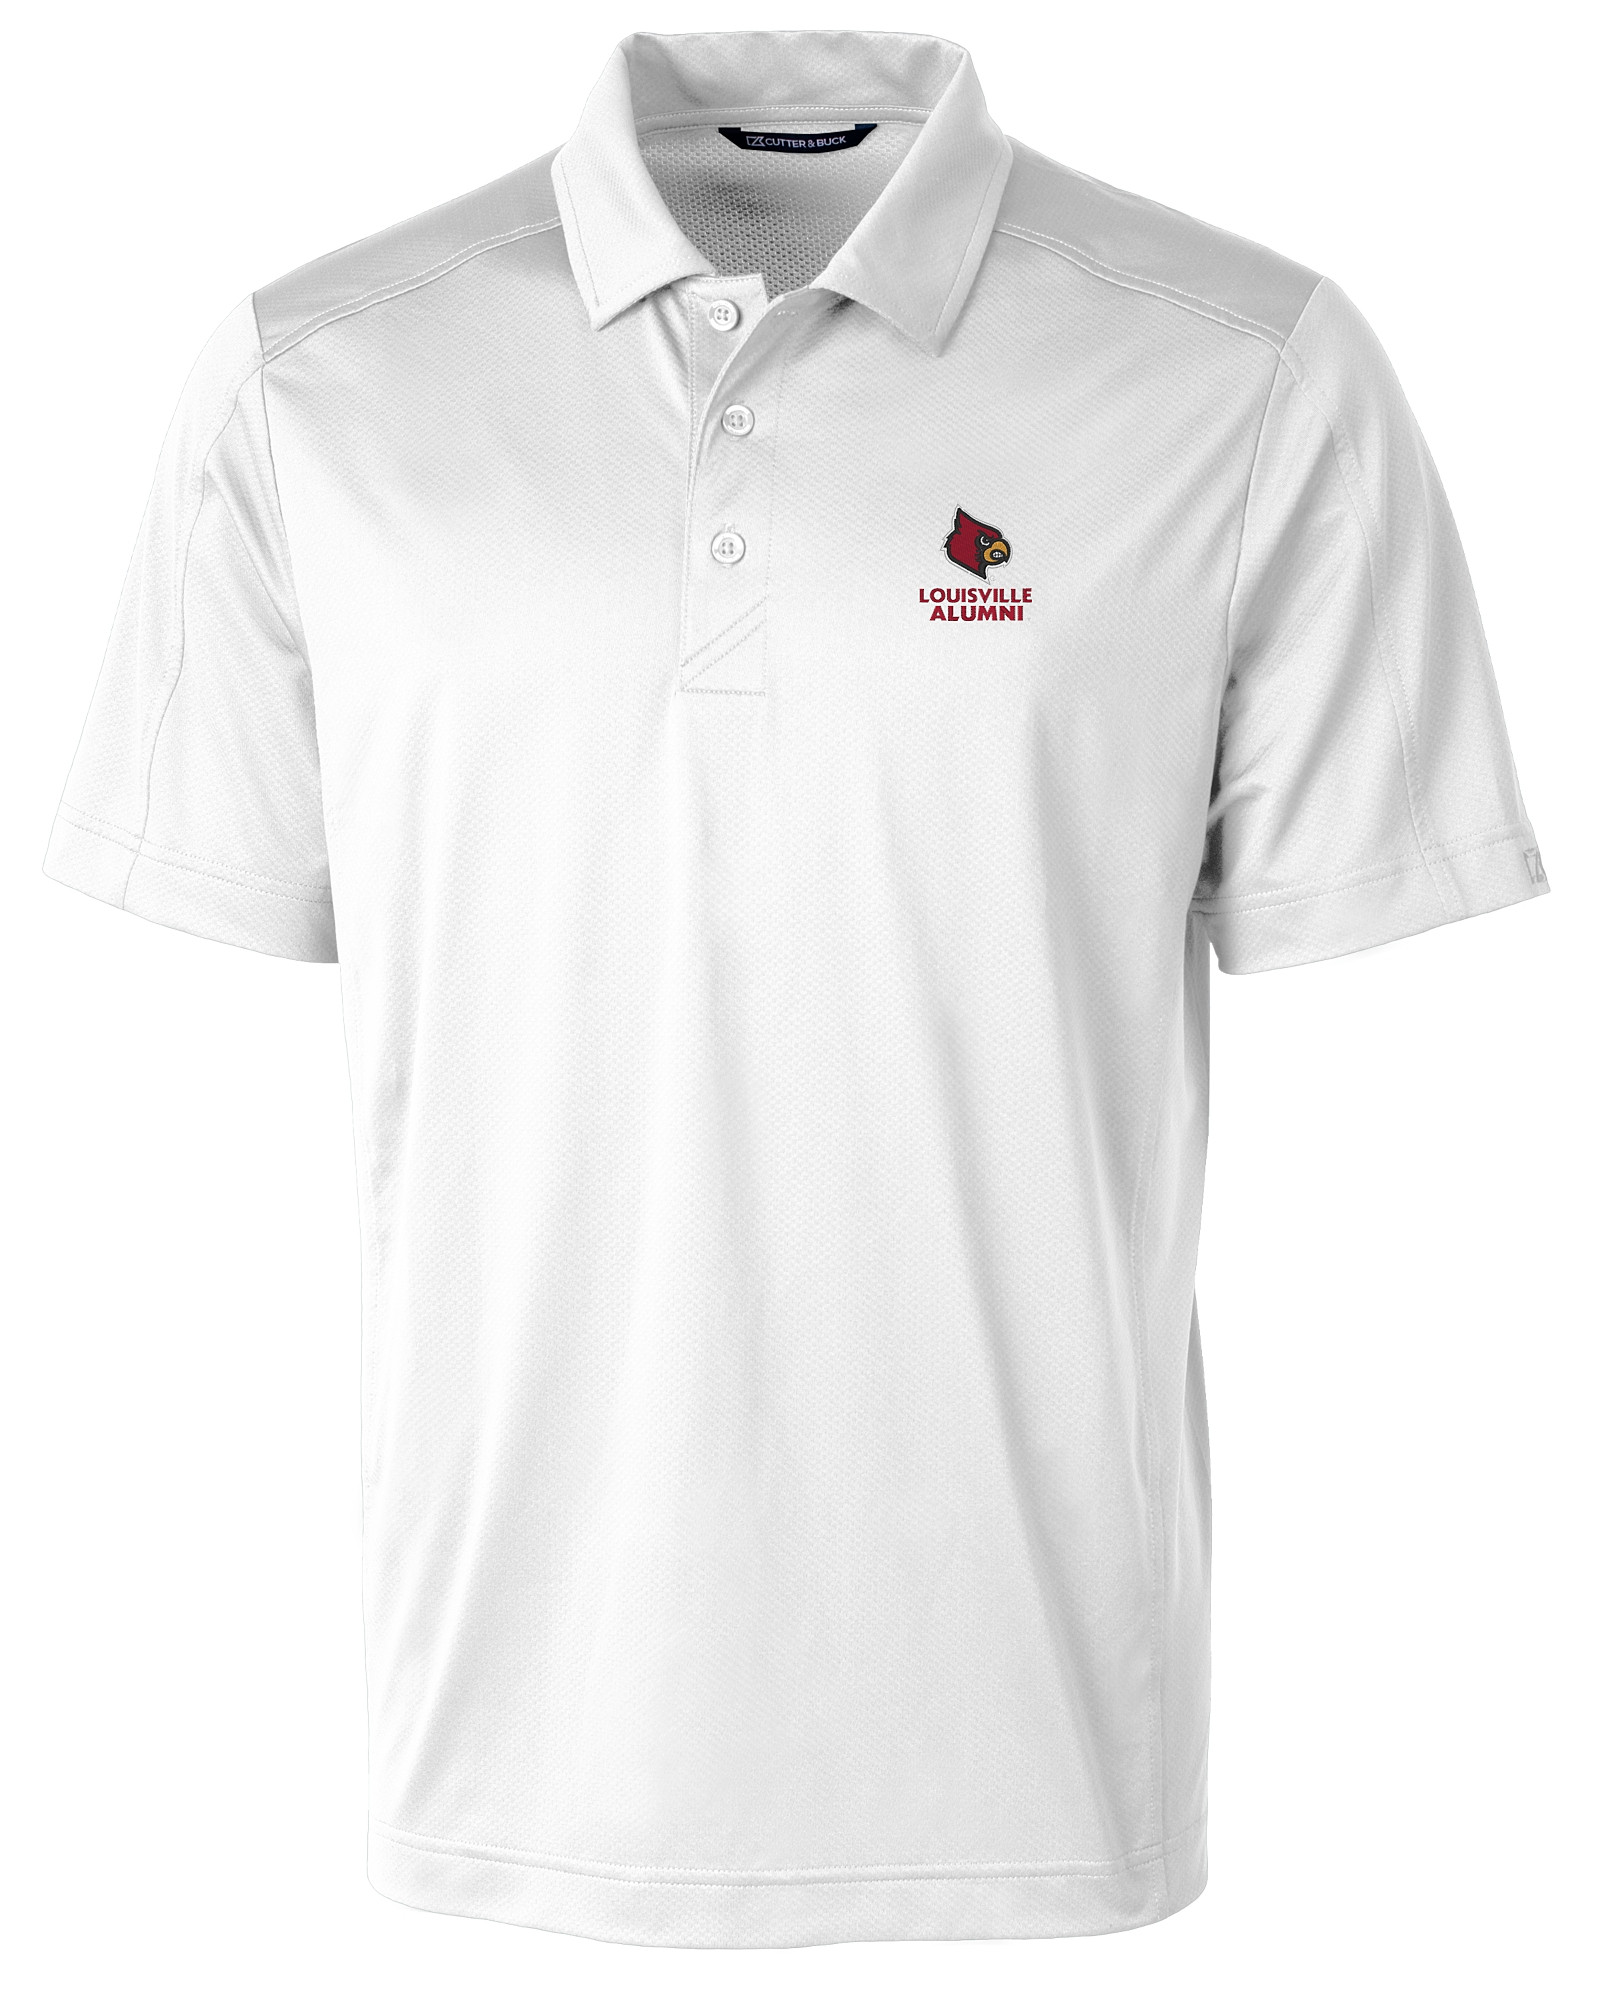 Men's Cutter & Buck Black Louisville Cardinals Alumni Logo Advantage  Tri-Blend Pique Long Sleeve DryTec